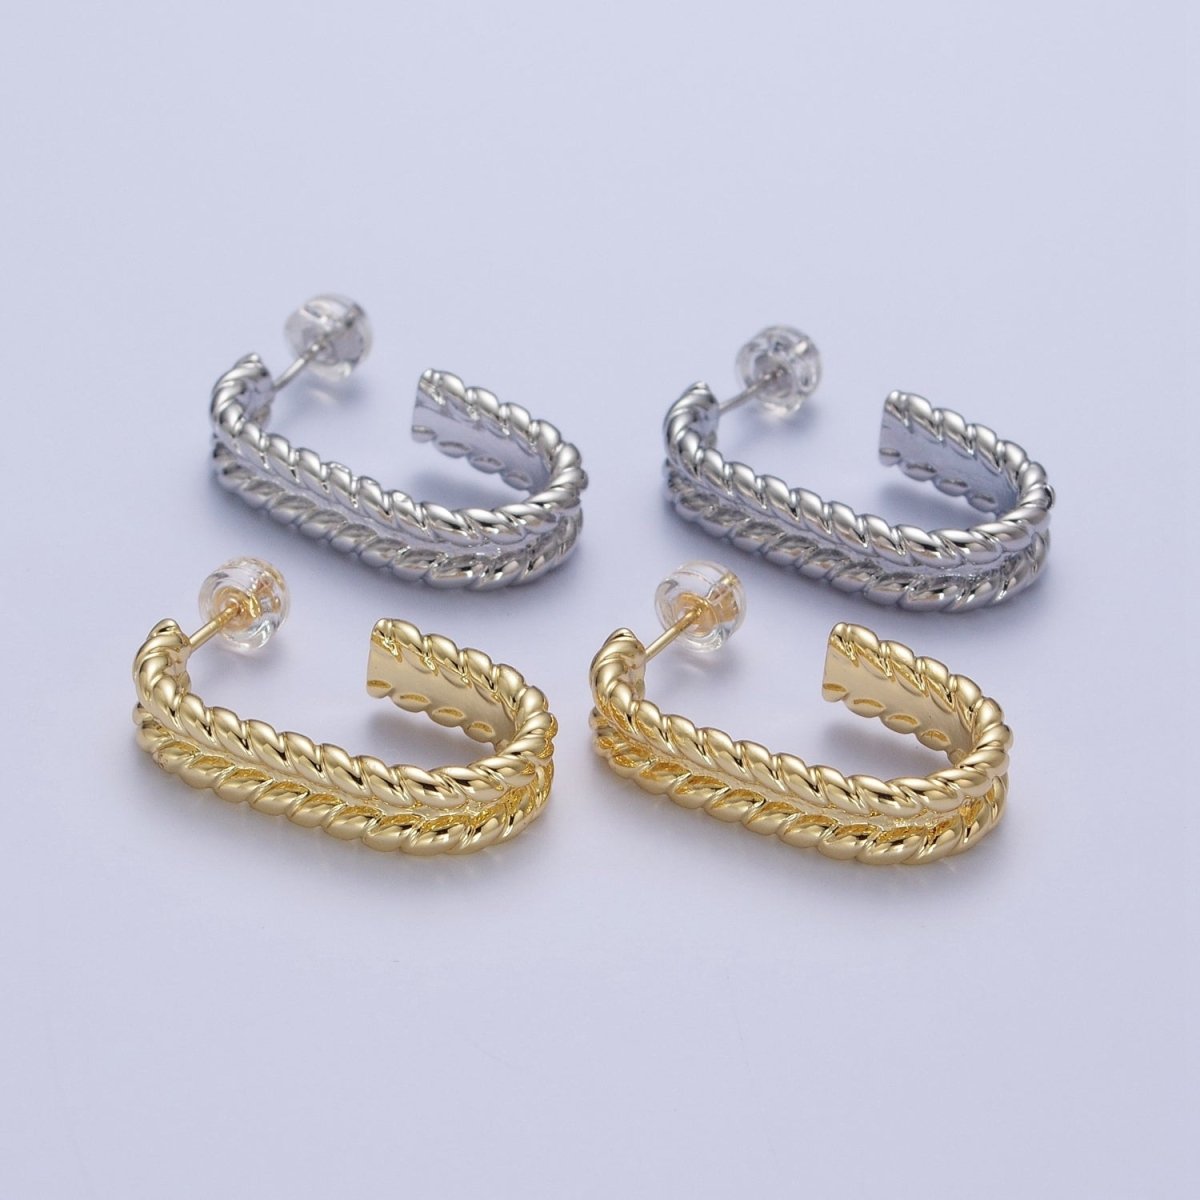 Wide Braided Twist Wheat J Shaped Hoop Stud Earrings in Gold & Silver | X-876 X-877 - DLUXCA